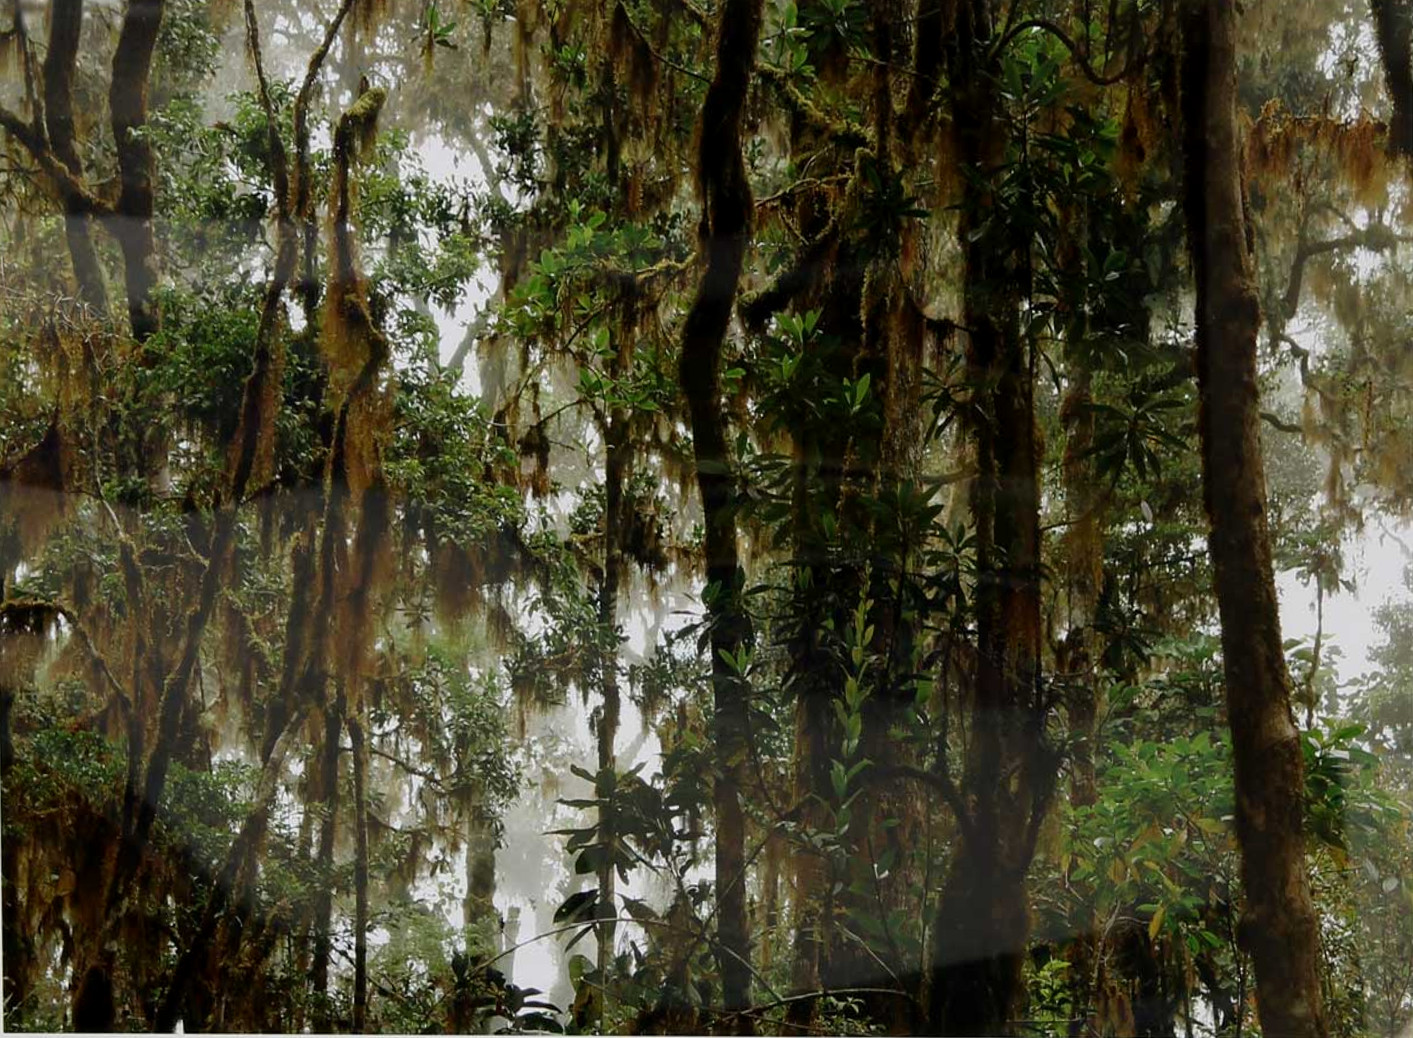 img-galeria-quote-  Obra llamada “ Fotografía 13, Bosque Nuboso”, tomada en el Cerro de la Muerte, Costa Rica. Técnica Fotografía digital.